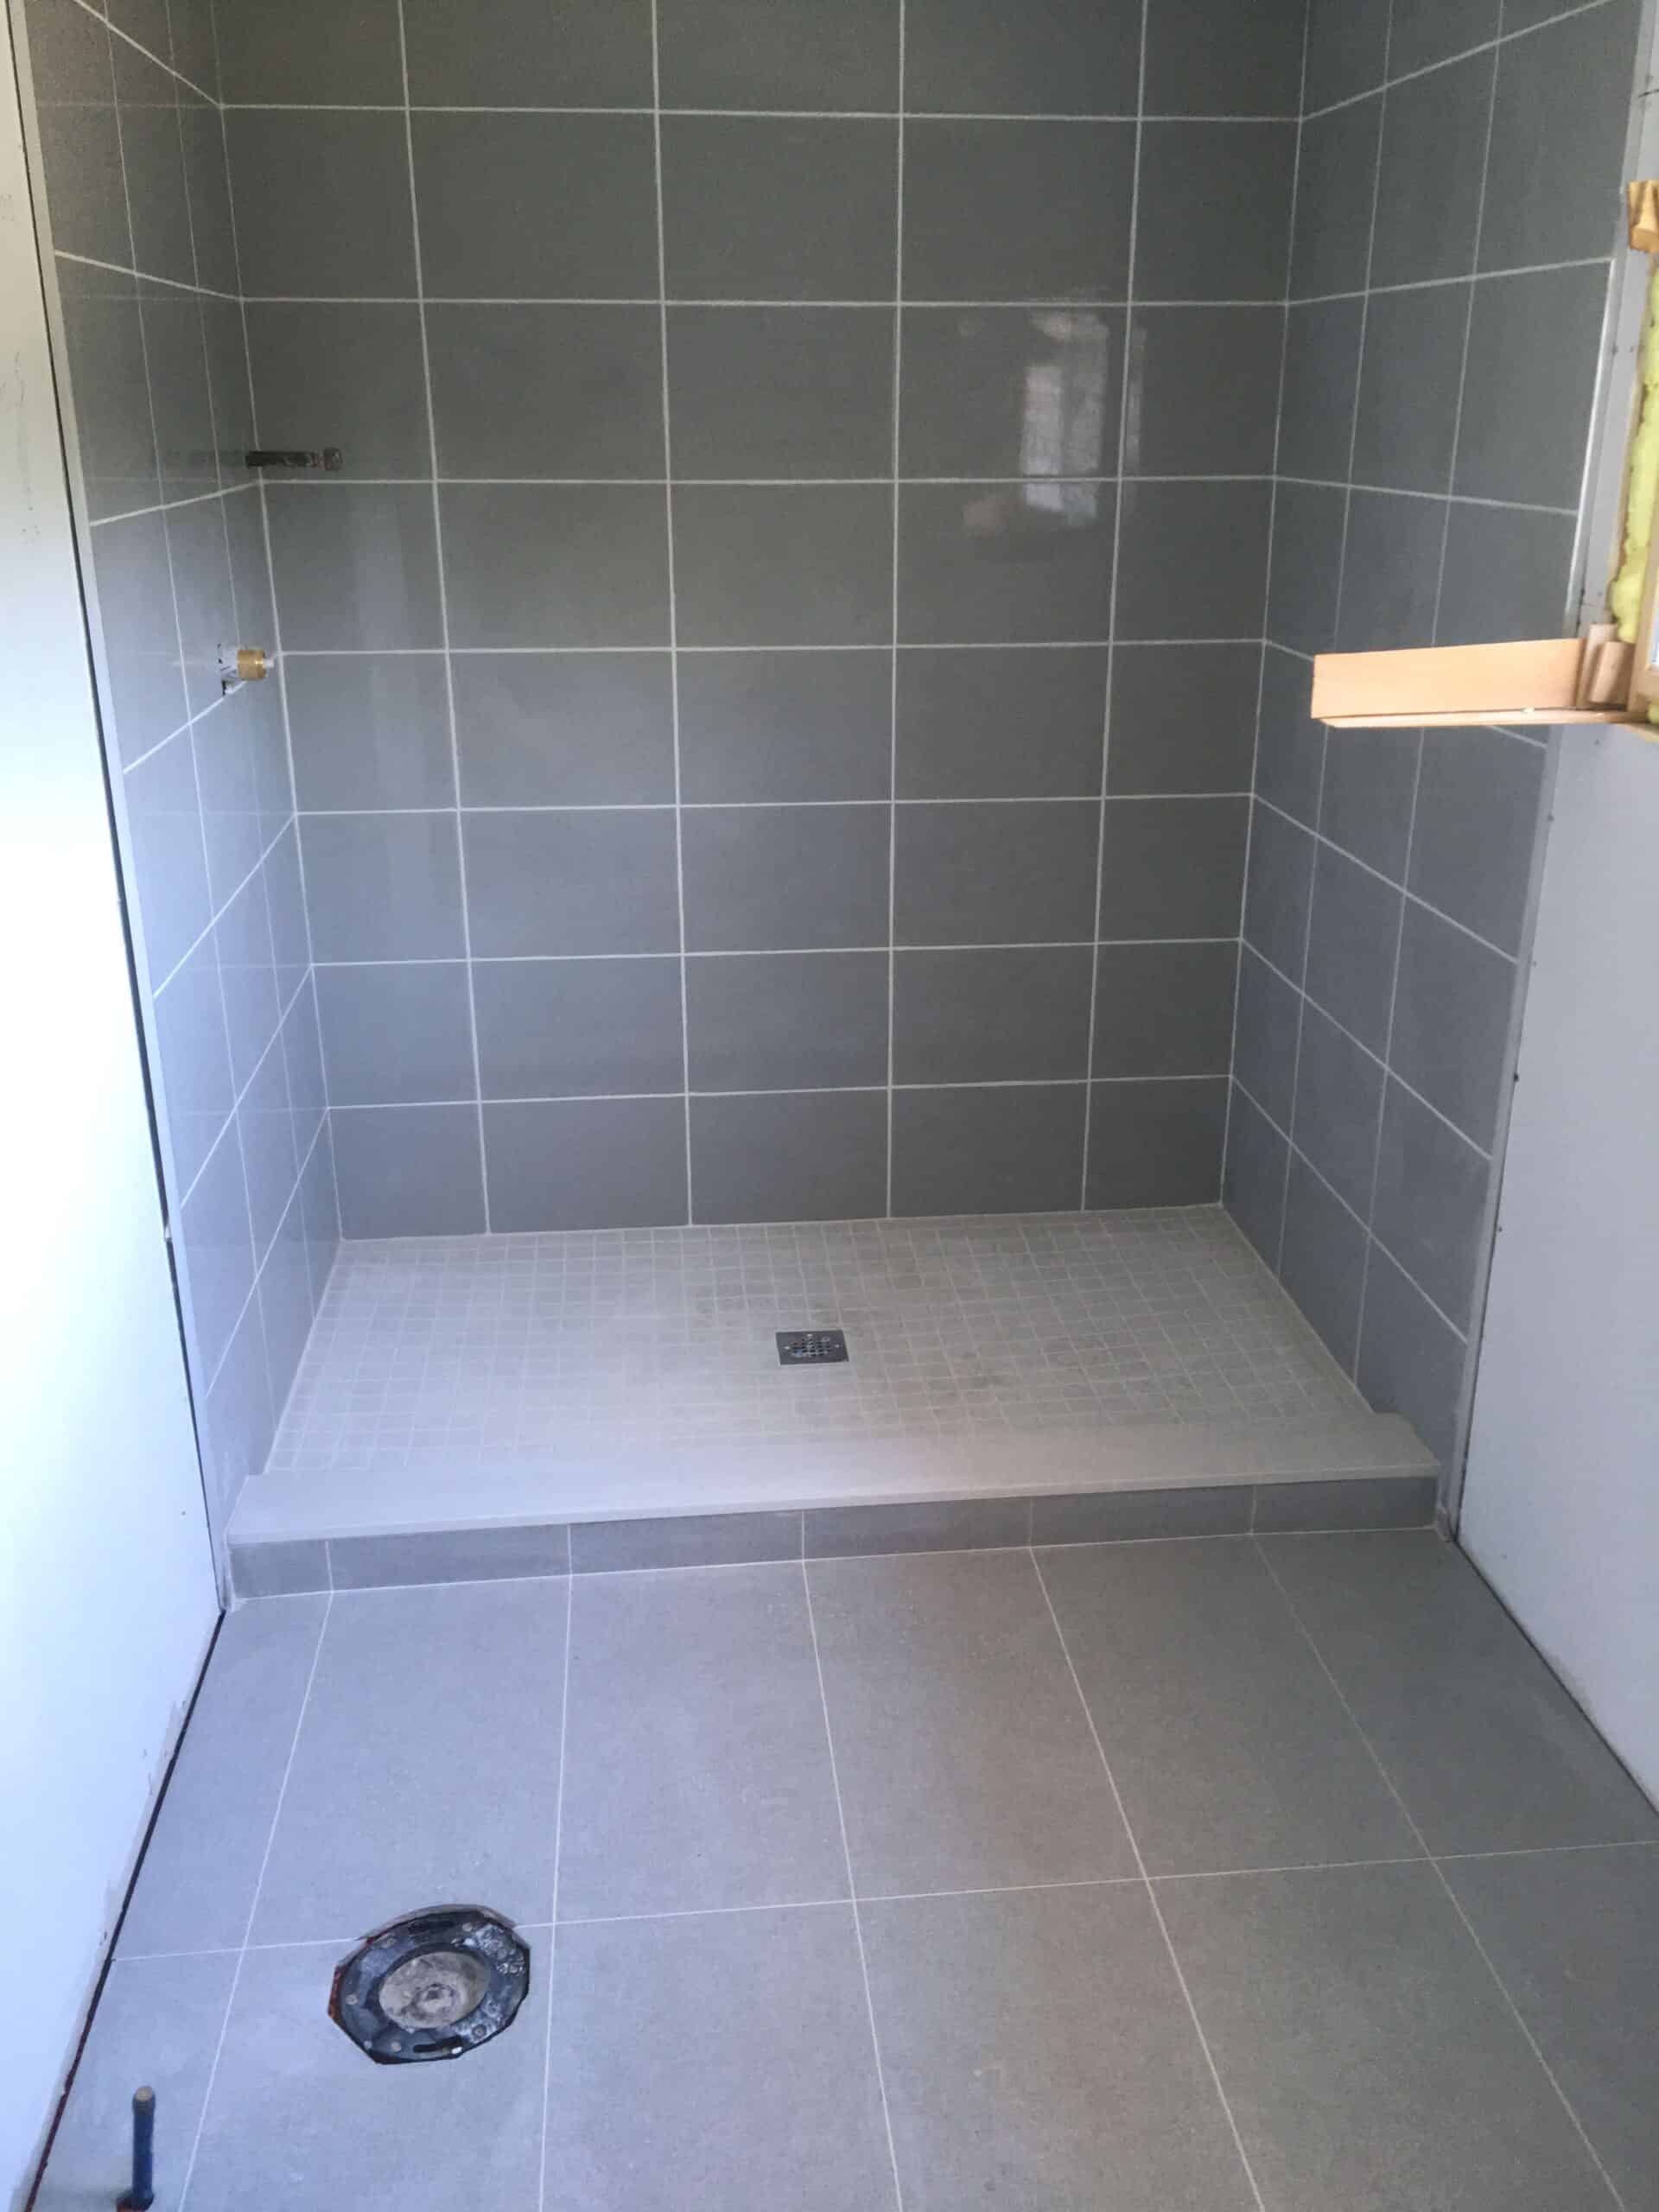 Bathroom Porcelain Floor Tile Installation | Canadian Tile Pro